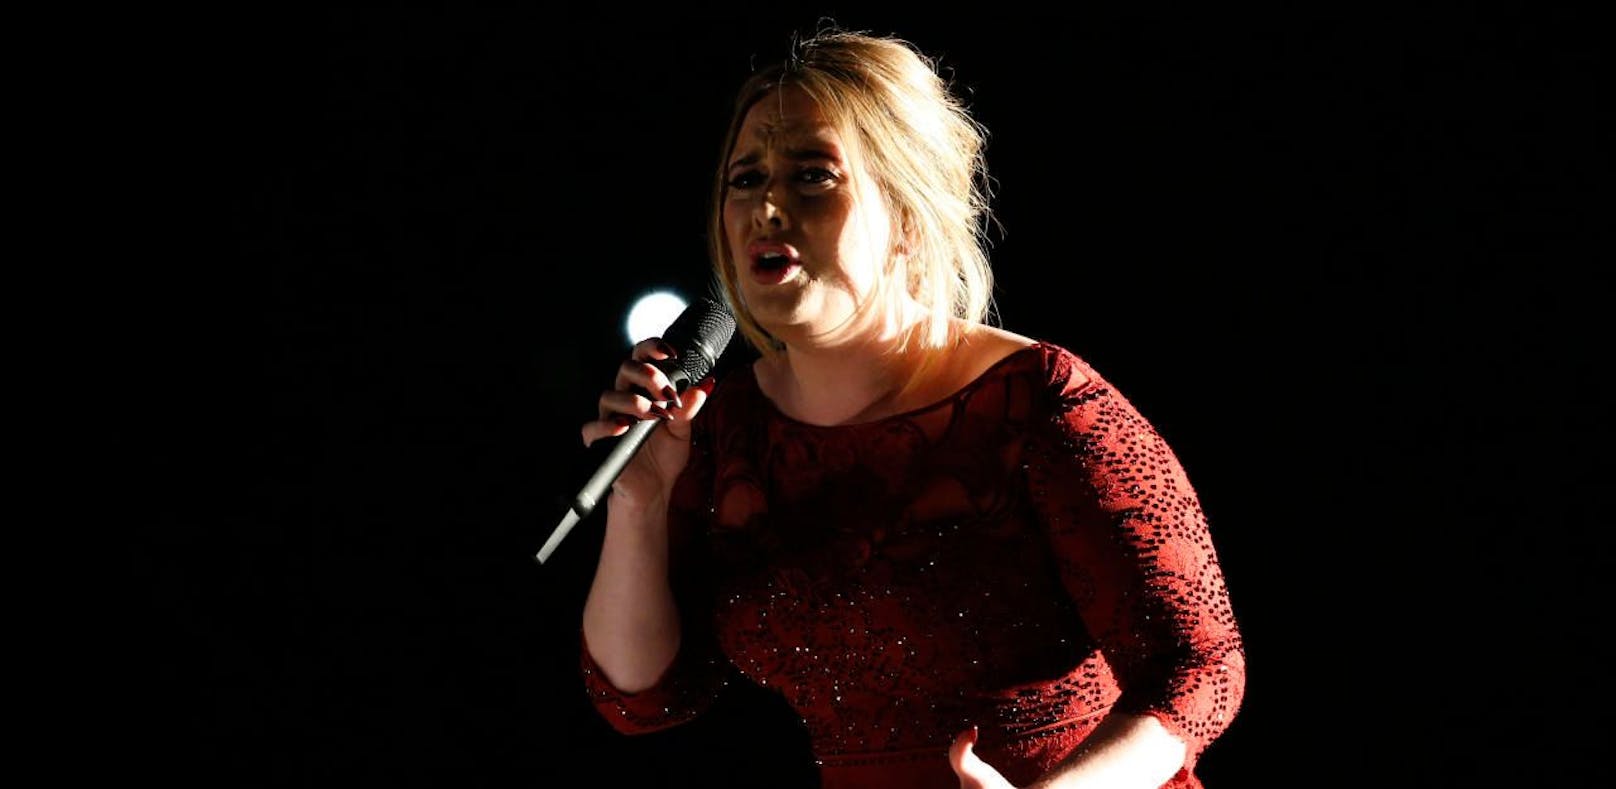 Stimmbänder verletzt: Adele sagt Konzerte ab